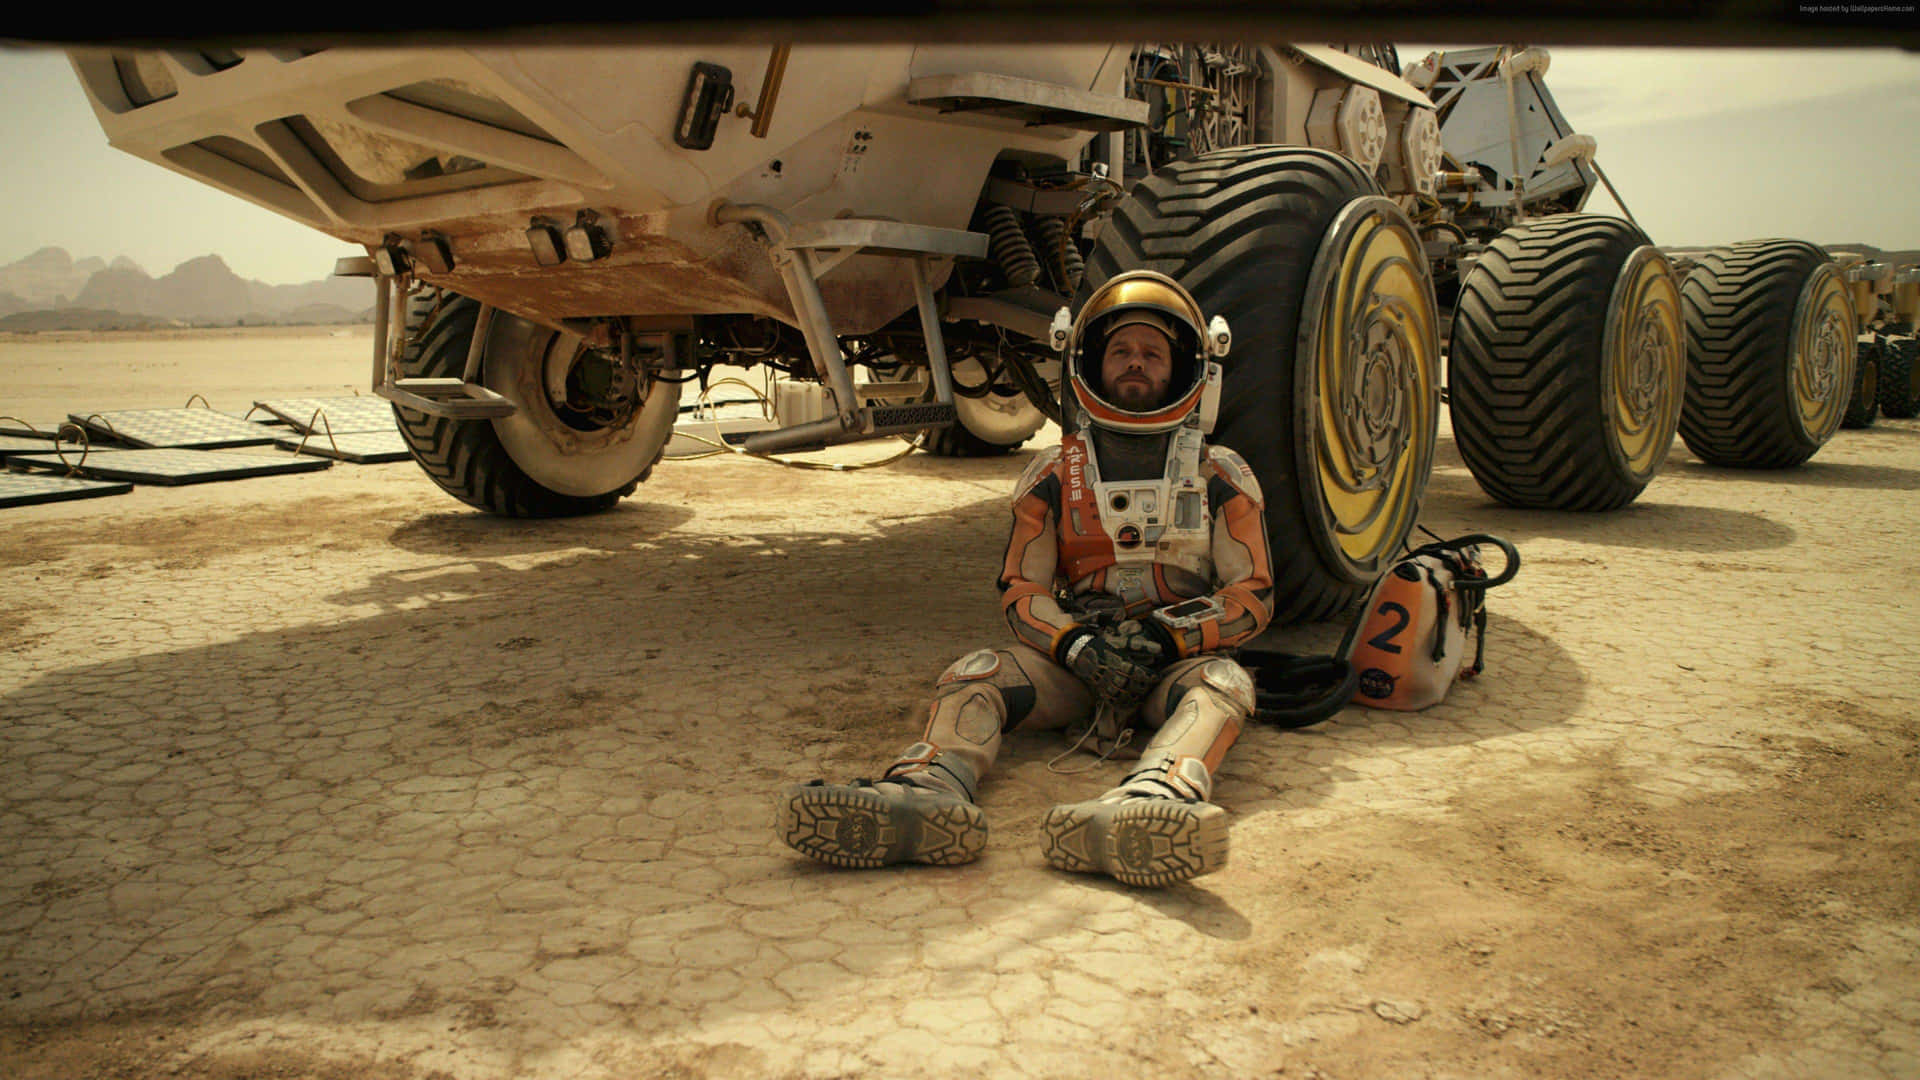 The Martian Movie Scene: Astronaut Mark Watney On Mars